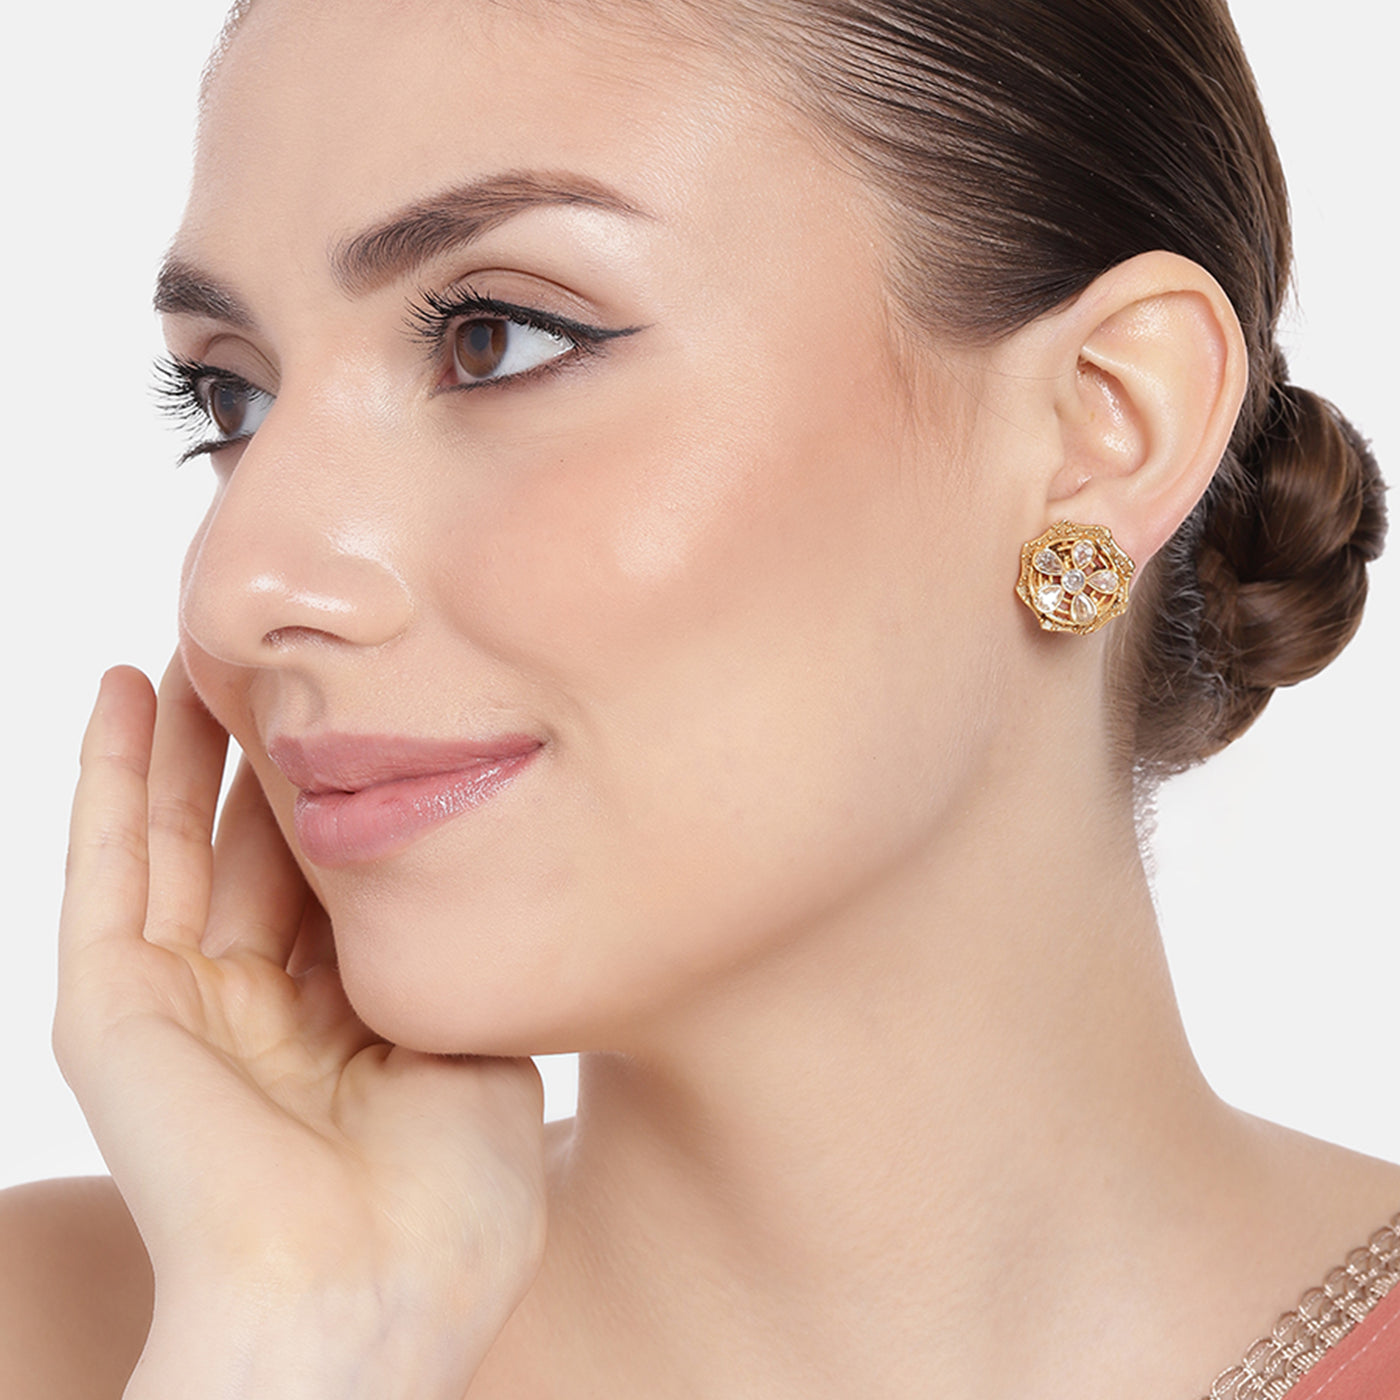 Estele Gold Plated Sparkling Flower Designer Matt Finish Stud Earrings with White Crystals for Women